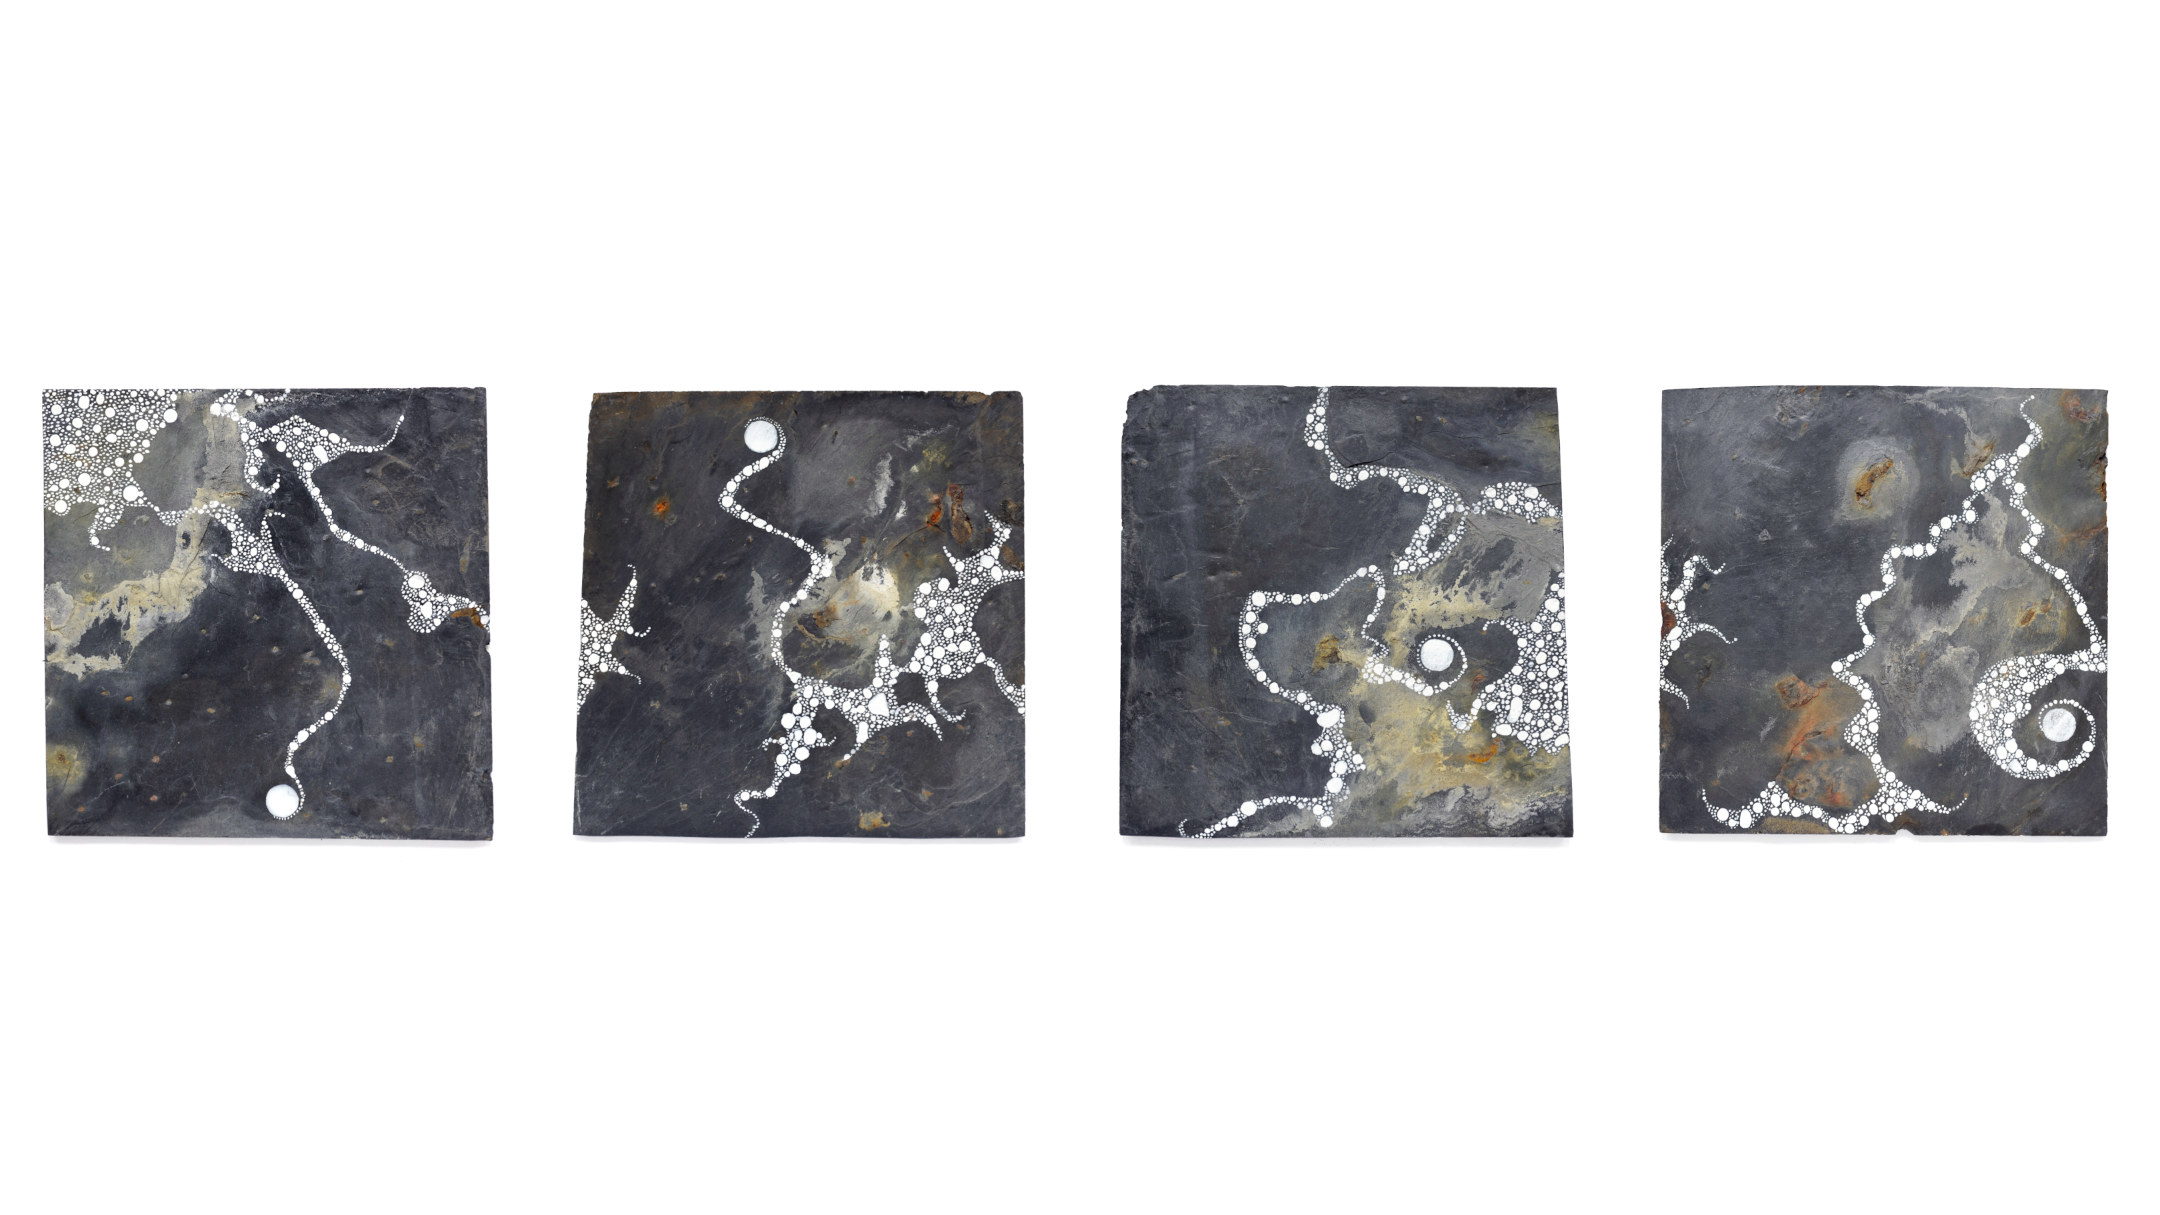 Mouvements d'une lune dans une série de 4 ardoises aux formes abstraites évoquant une galaxie peintes sur une ardoise gris et rouille, format carré